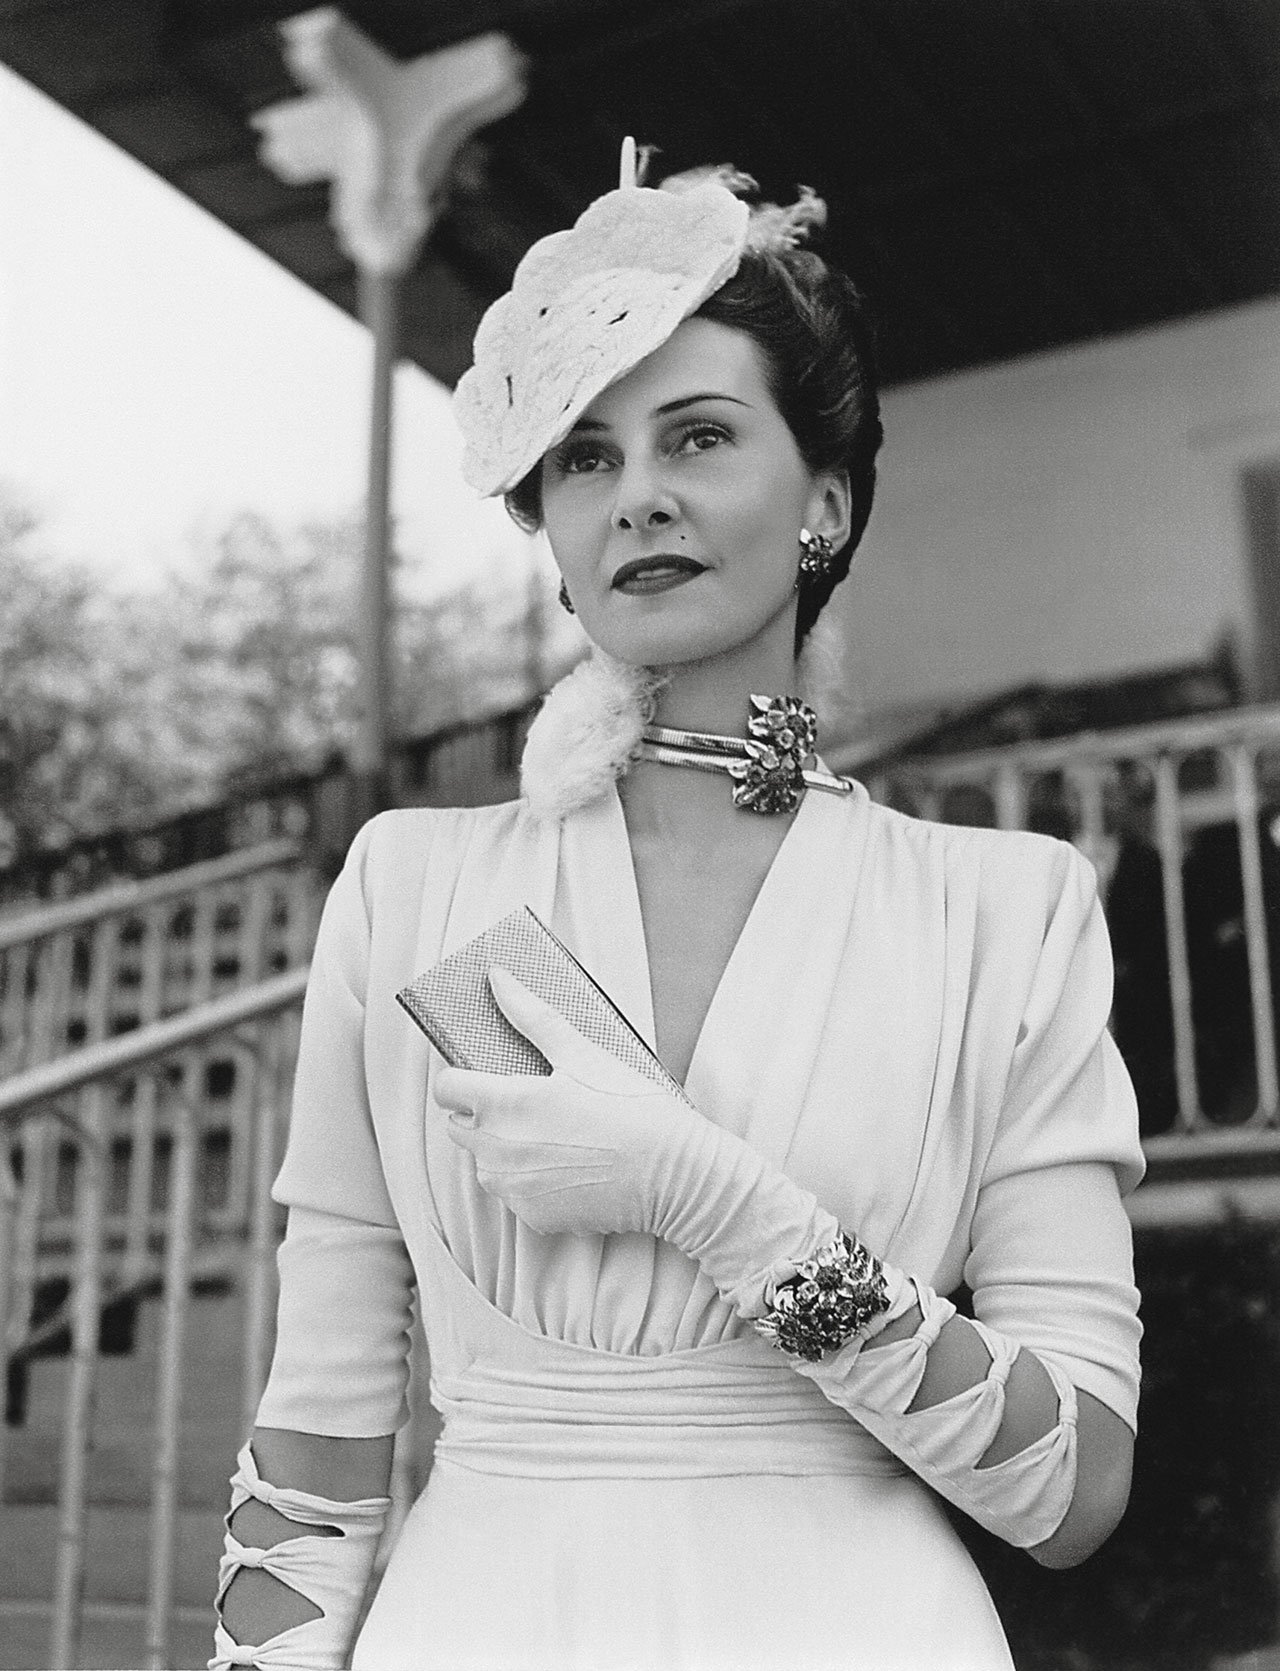 海伦·雅宝 (Hélène Arpels) 于 1939 年 6 月 4 日在尚蒂伊 (Chantilly) 的戴安娜大奖赛 (Prix de Diane) 上。她戴着 Passe-partout 项链和手镯。 法国国家图书馆/Séeberger 兄弟摄。